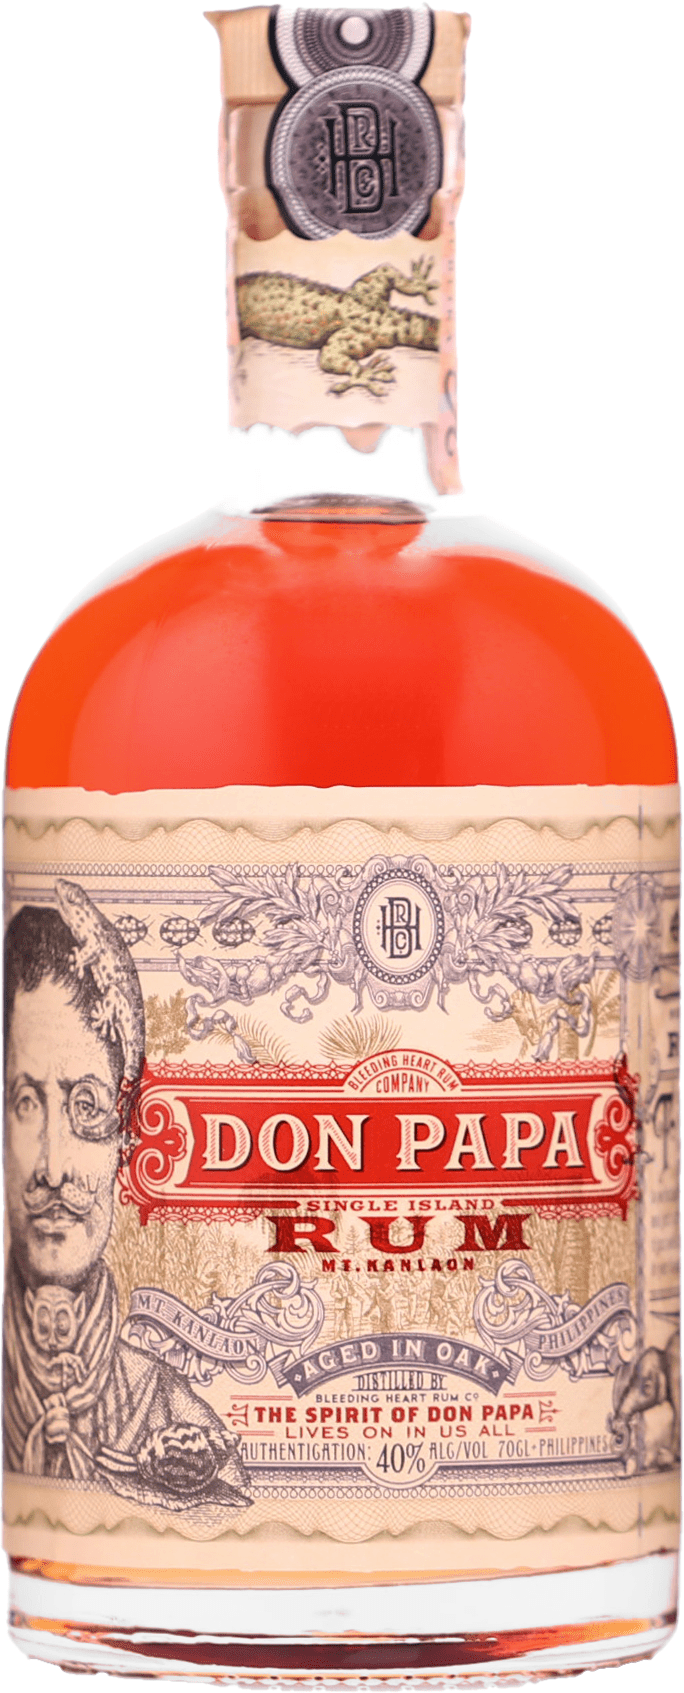 Don Papa - Dark rum